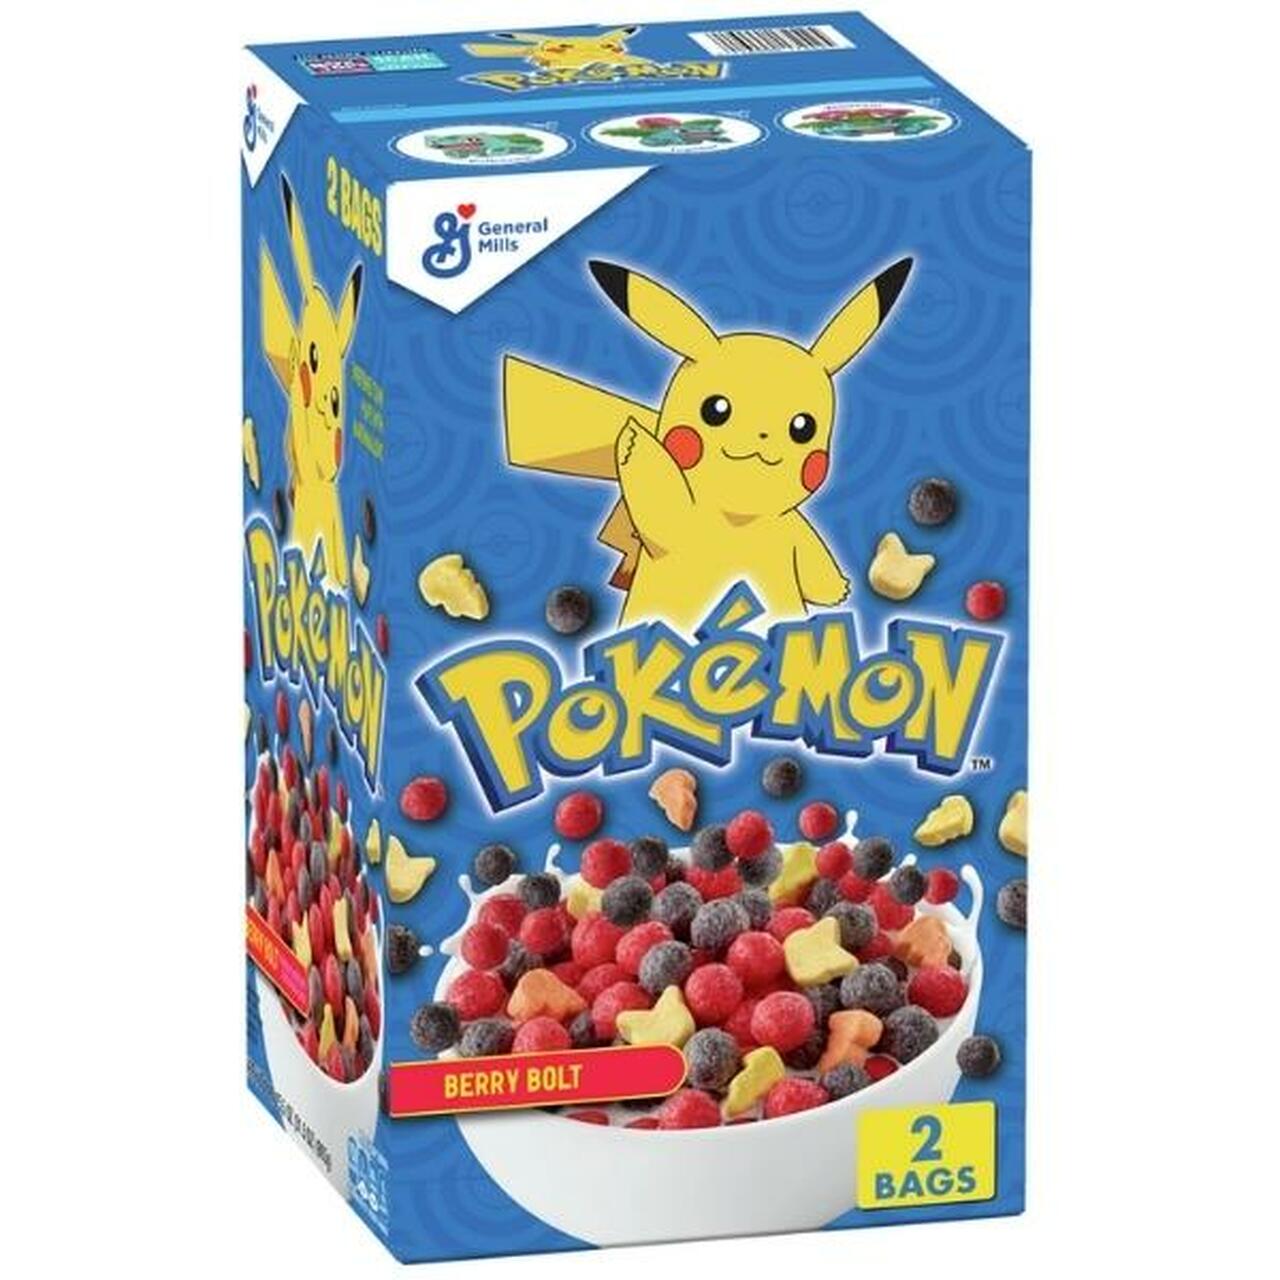 Pokémon Berry Bolt Big Box Cereal